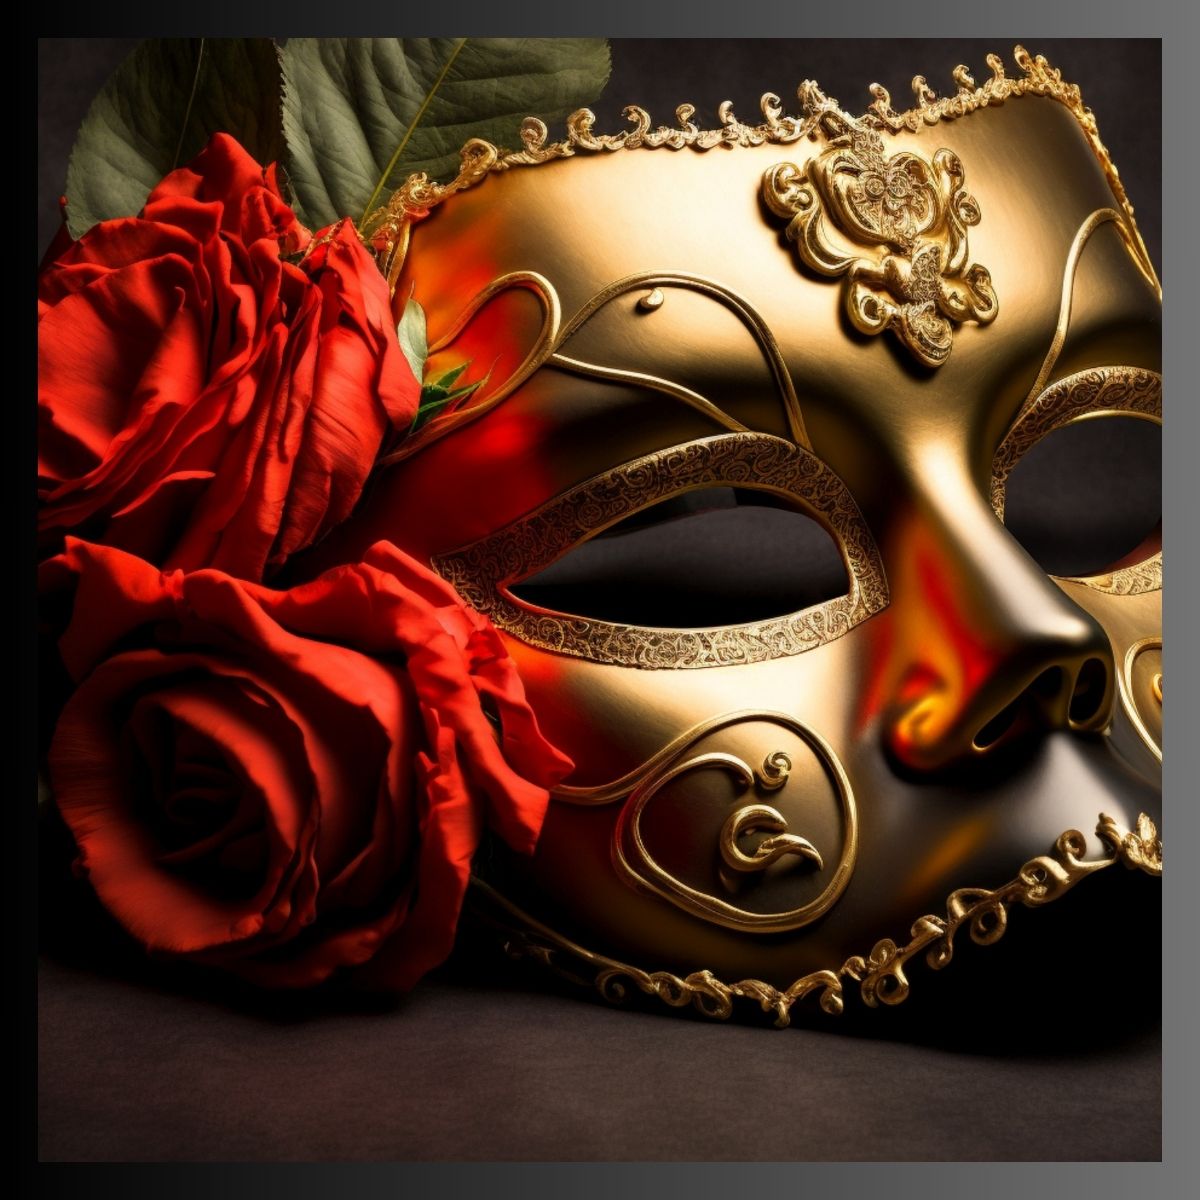 Bild von Rosen und Maske, die die Synastrie von Mars, Trigon und Venus symbolisieren